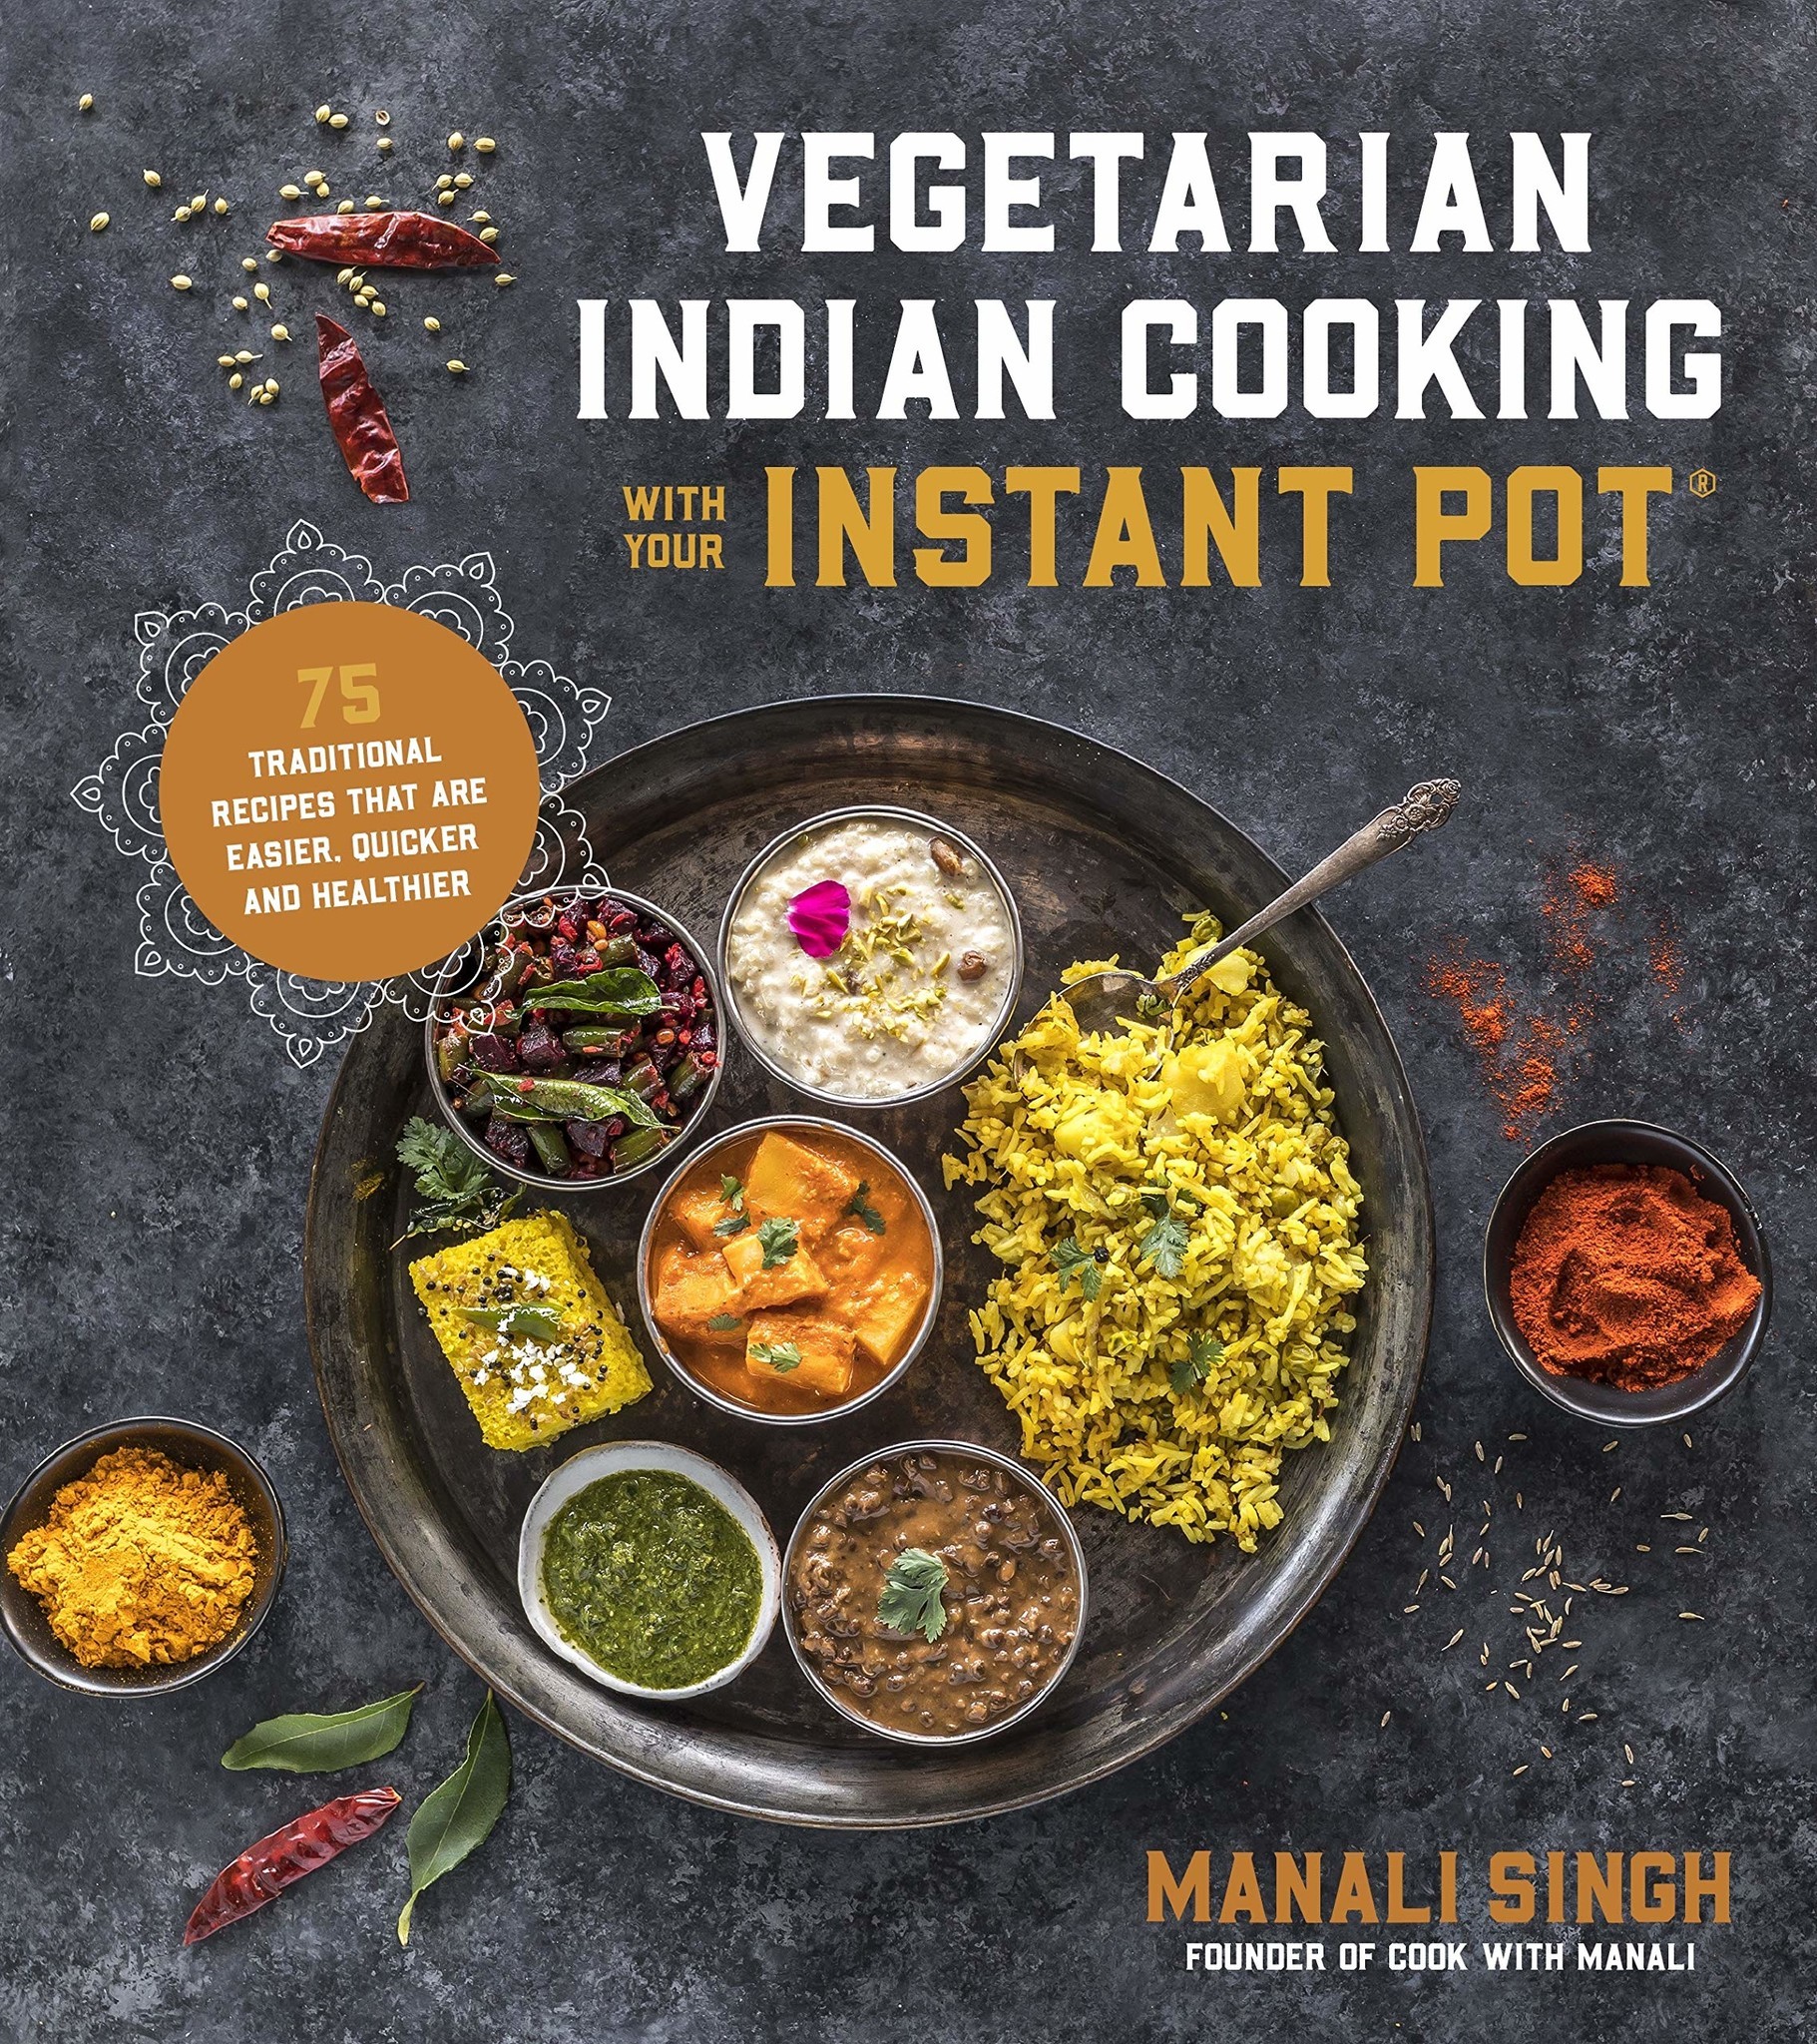 Instant Pot Cookbooks for Vegetarians